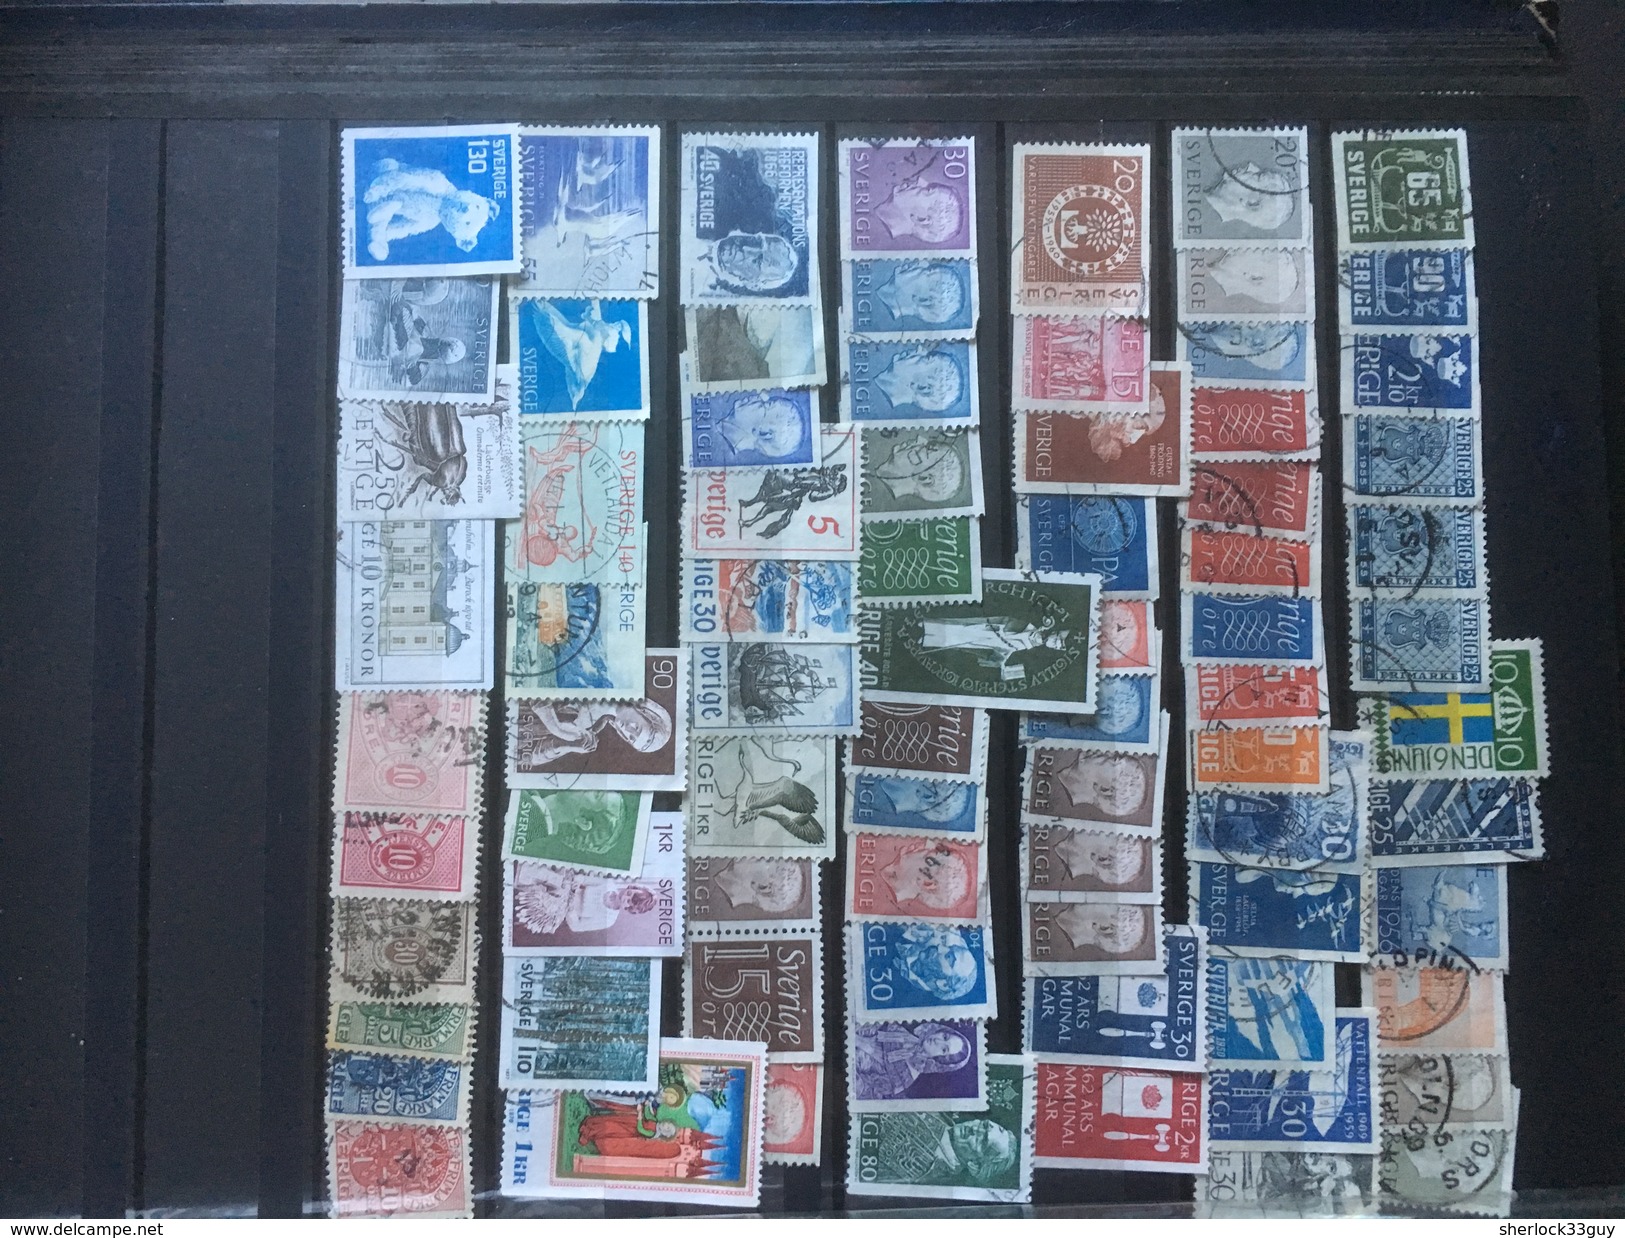 DIVERS MONDE + FRANCE. Plus de 2000 timbres différents. DEPART 15 EUROS